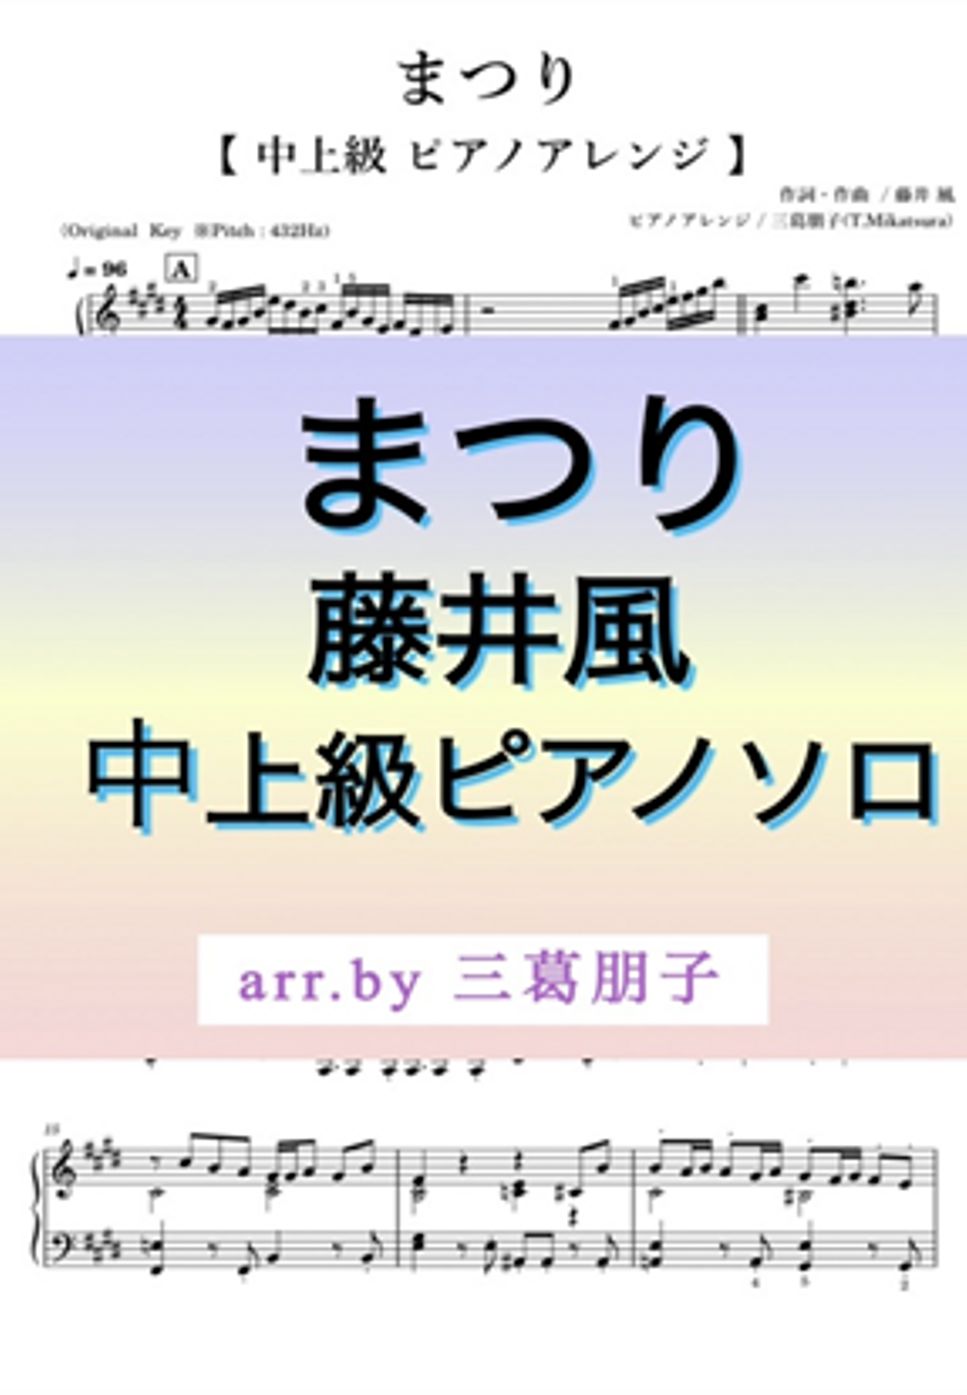 藤井風 - まつり 《ピアノソロ》中上級 (ペダル・運指付き) by 三葛朋子(T.Mikatsura)